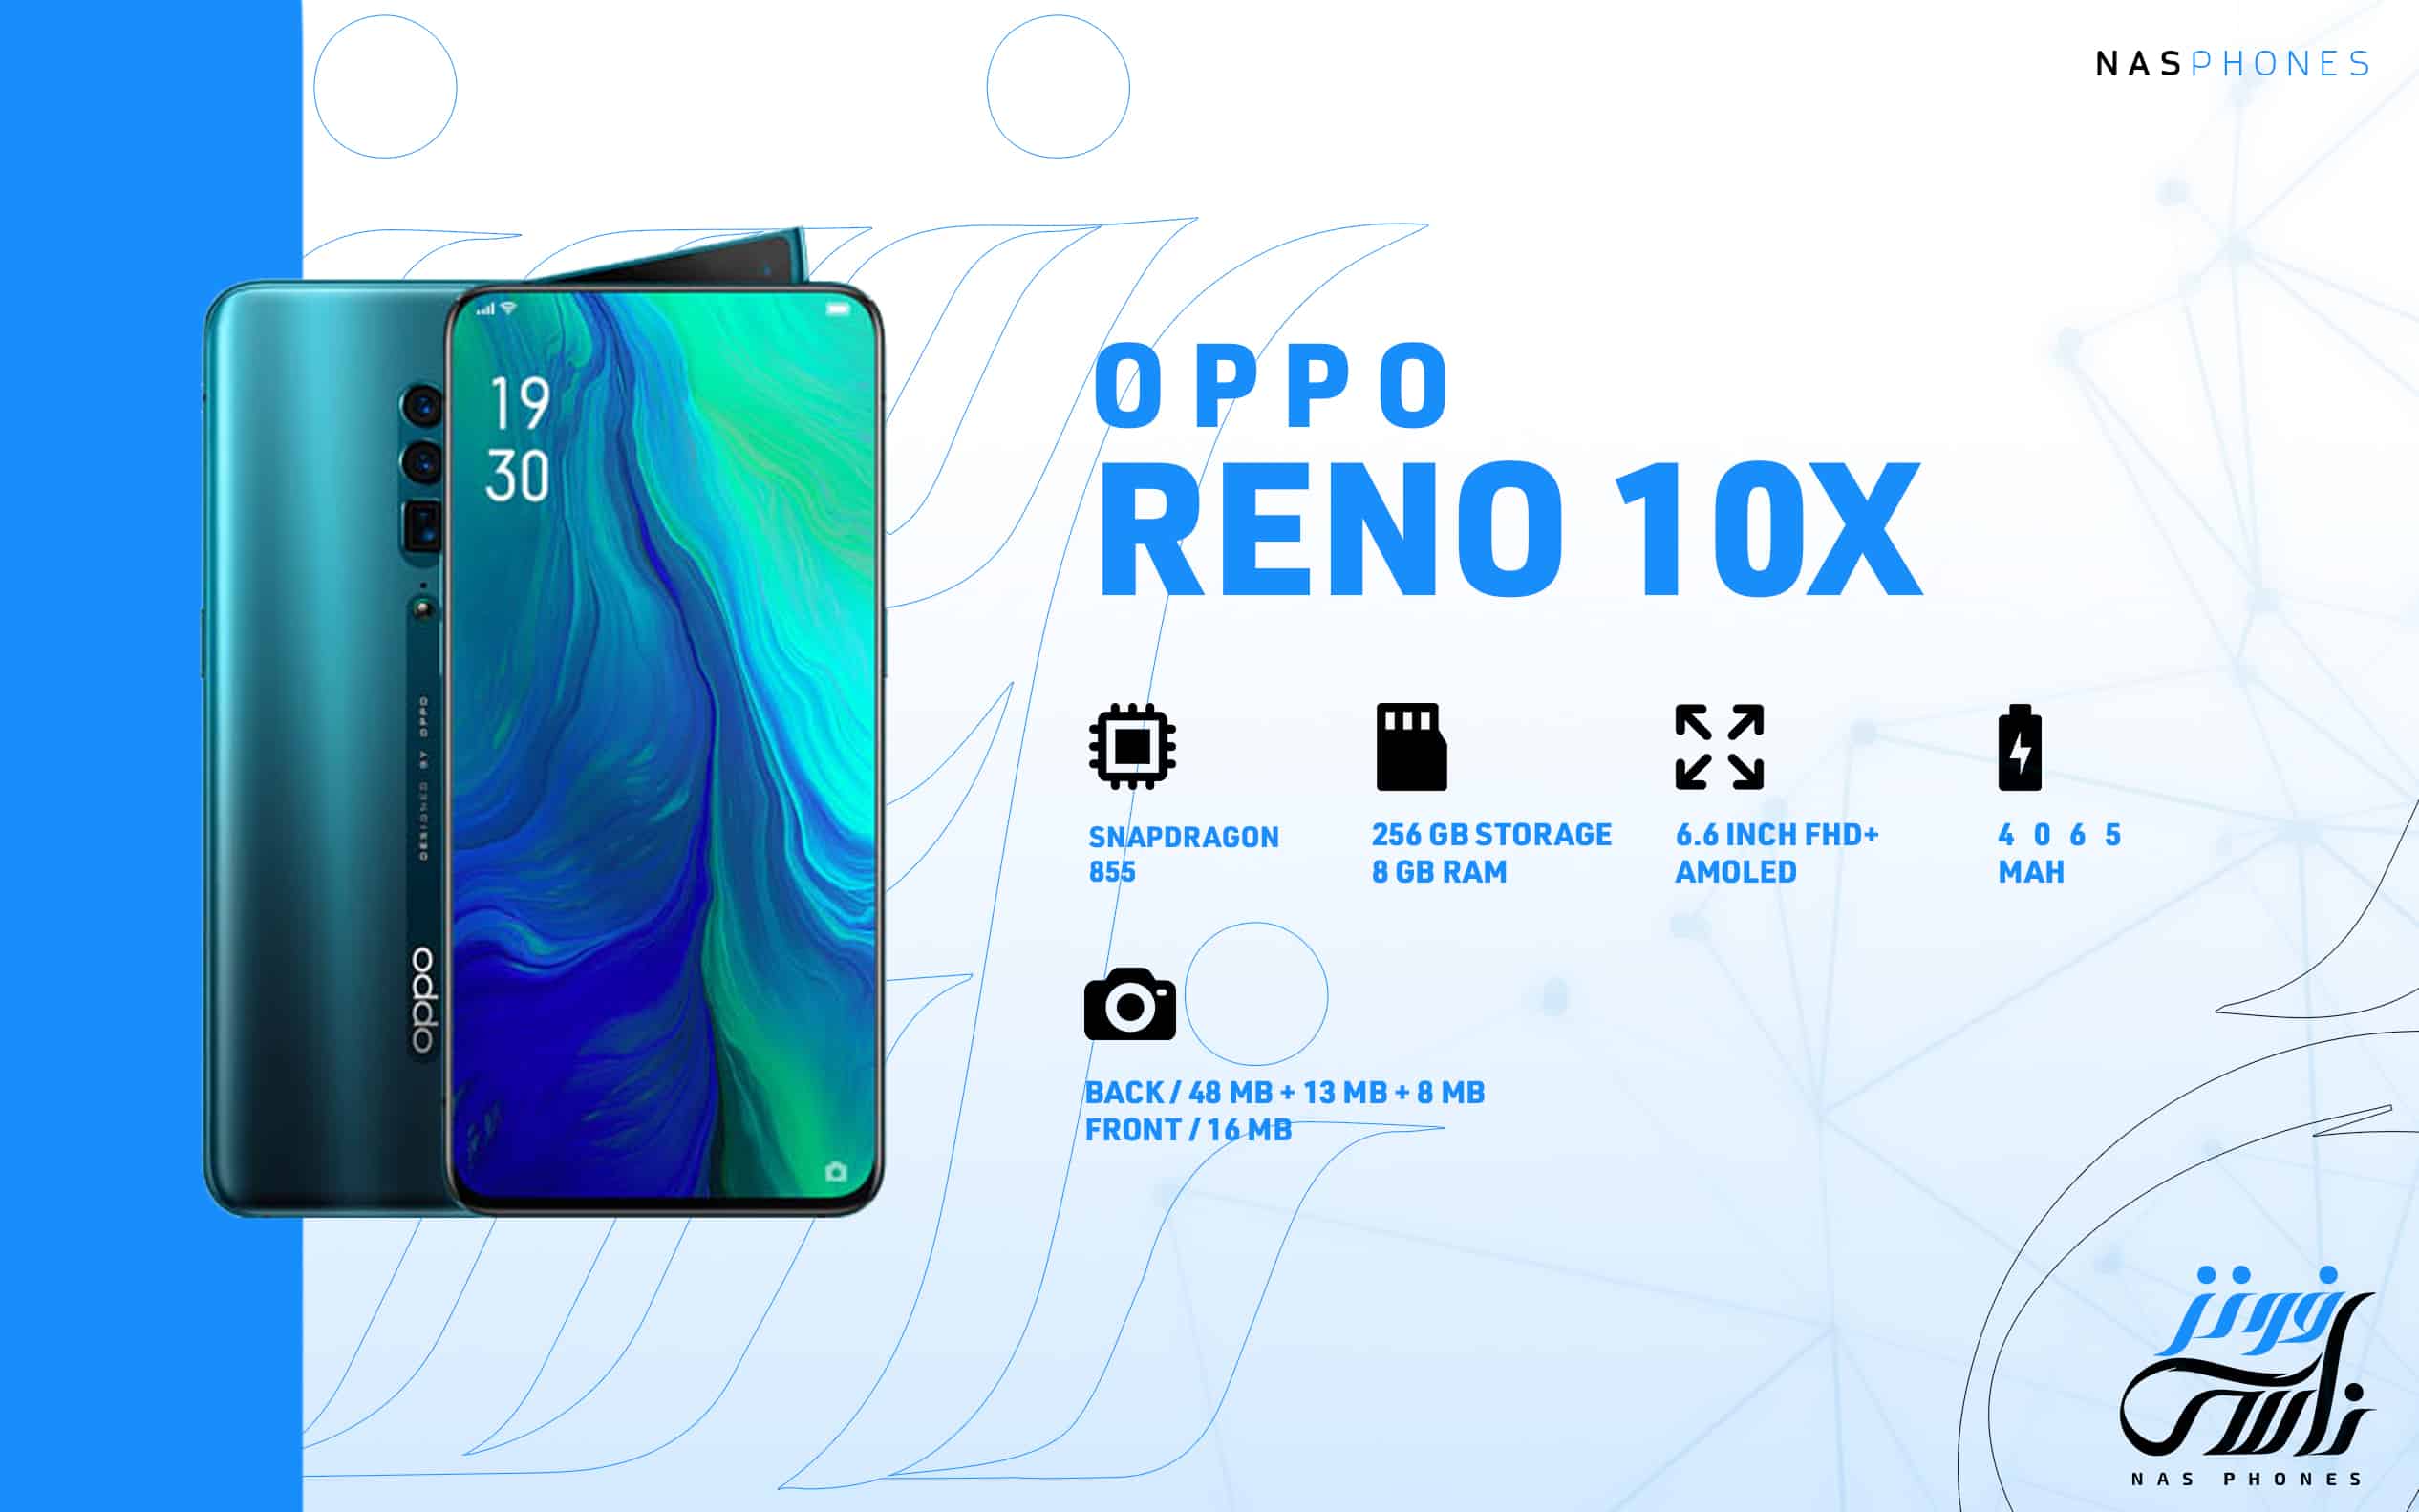 Oppo Reno 10x